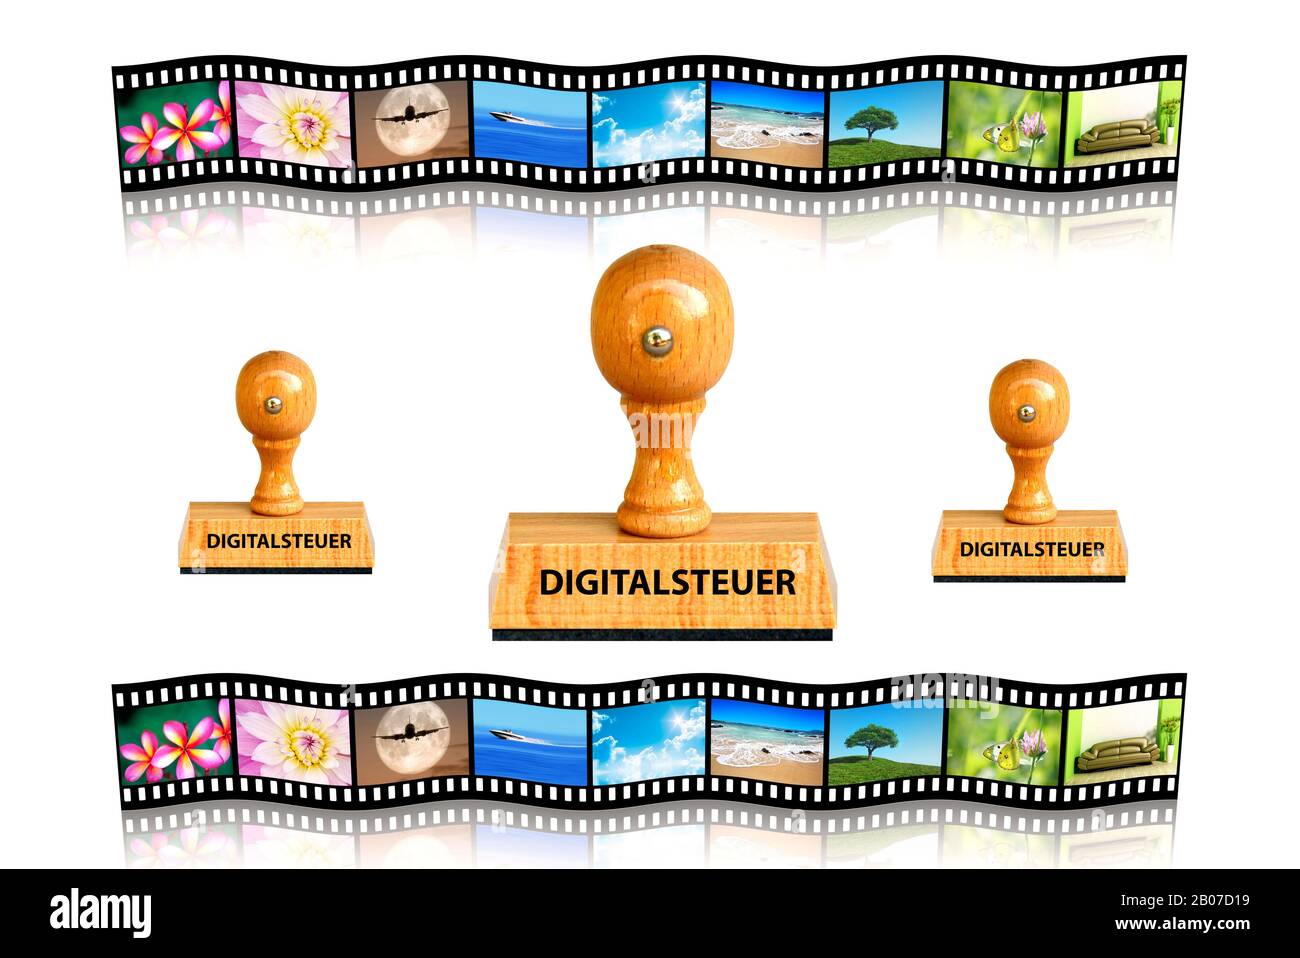 Cachet Digitalsteuer, impôt numérique, film de diapositives en arrière-plan, Allemagne Banque D'Images